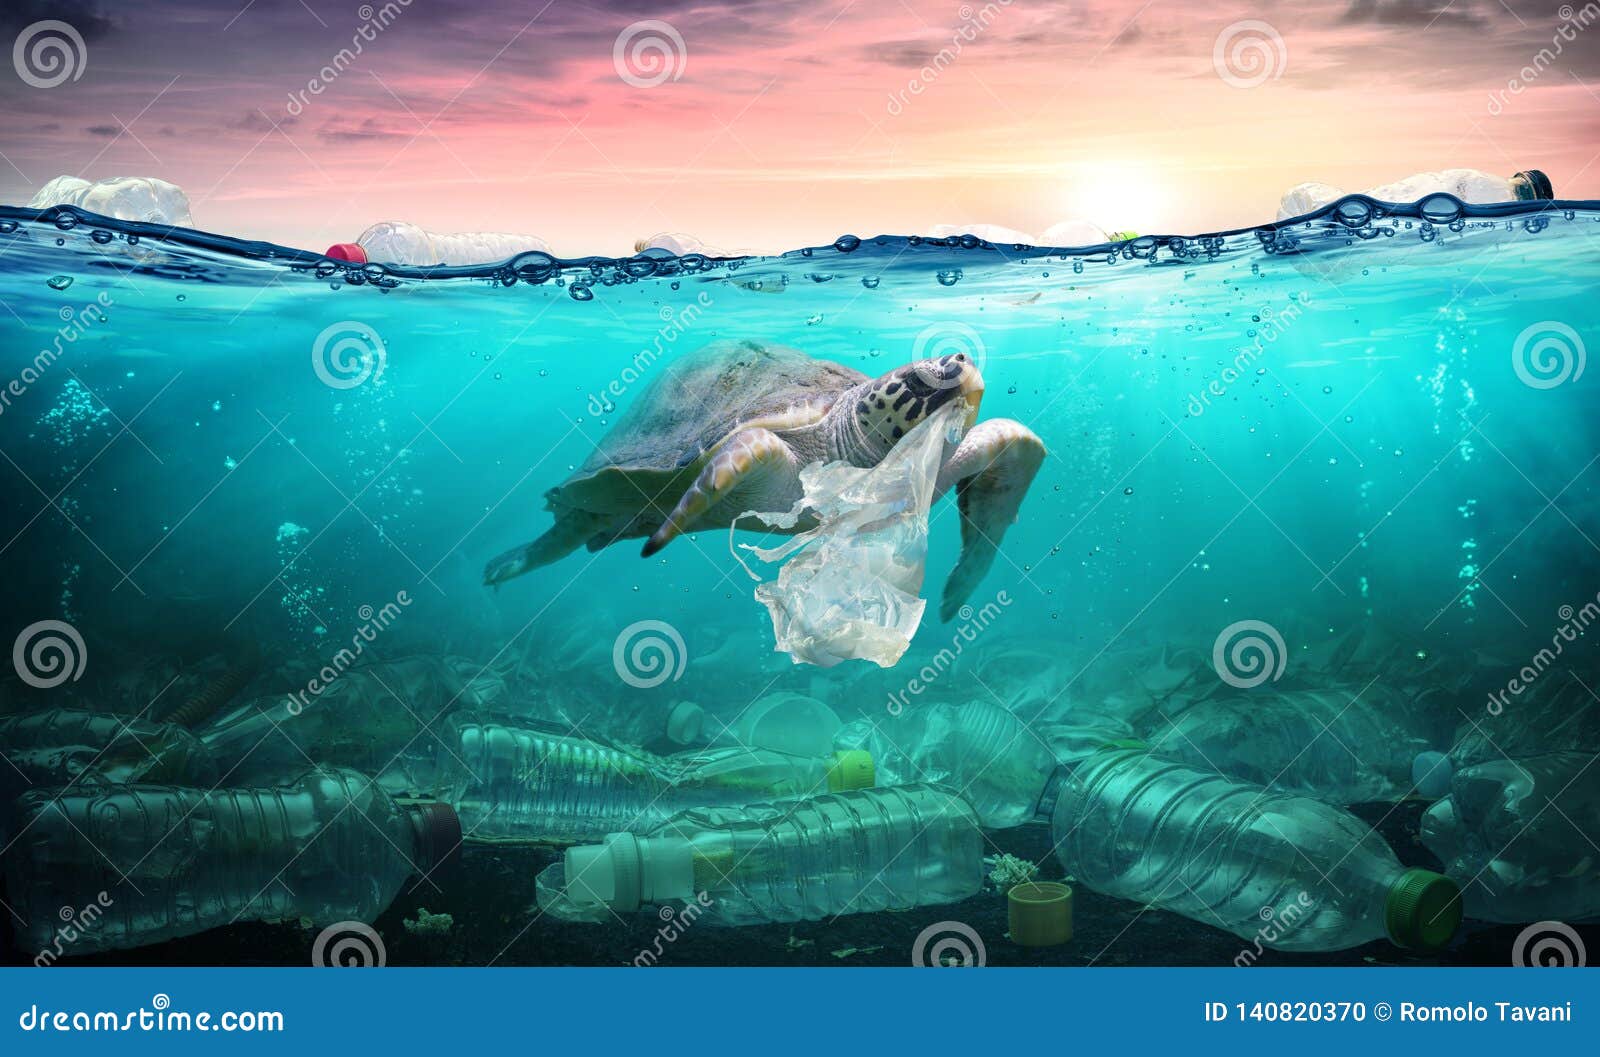 plastic pollution in ocean - turtle eat plastic bag